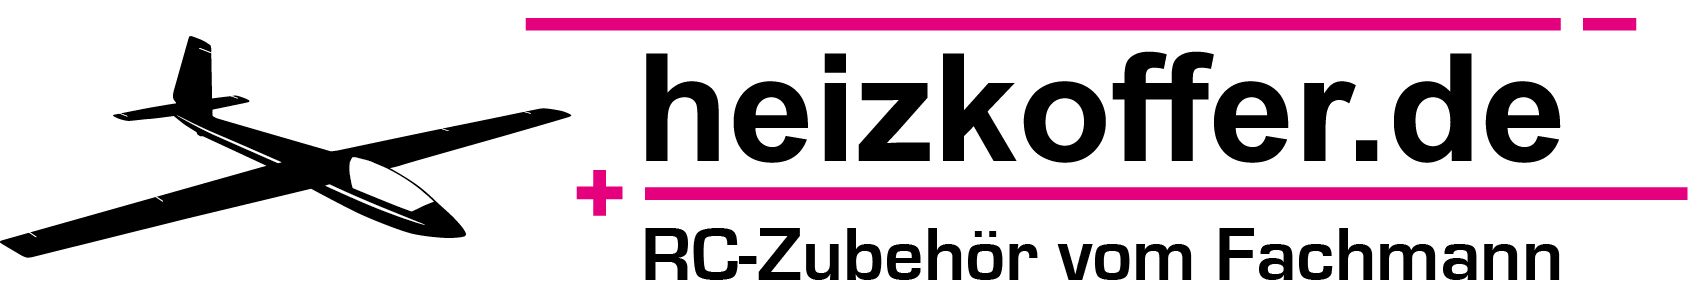 heizkoffer_Logo.jpg.jpg